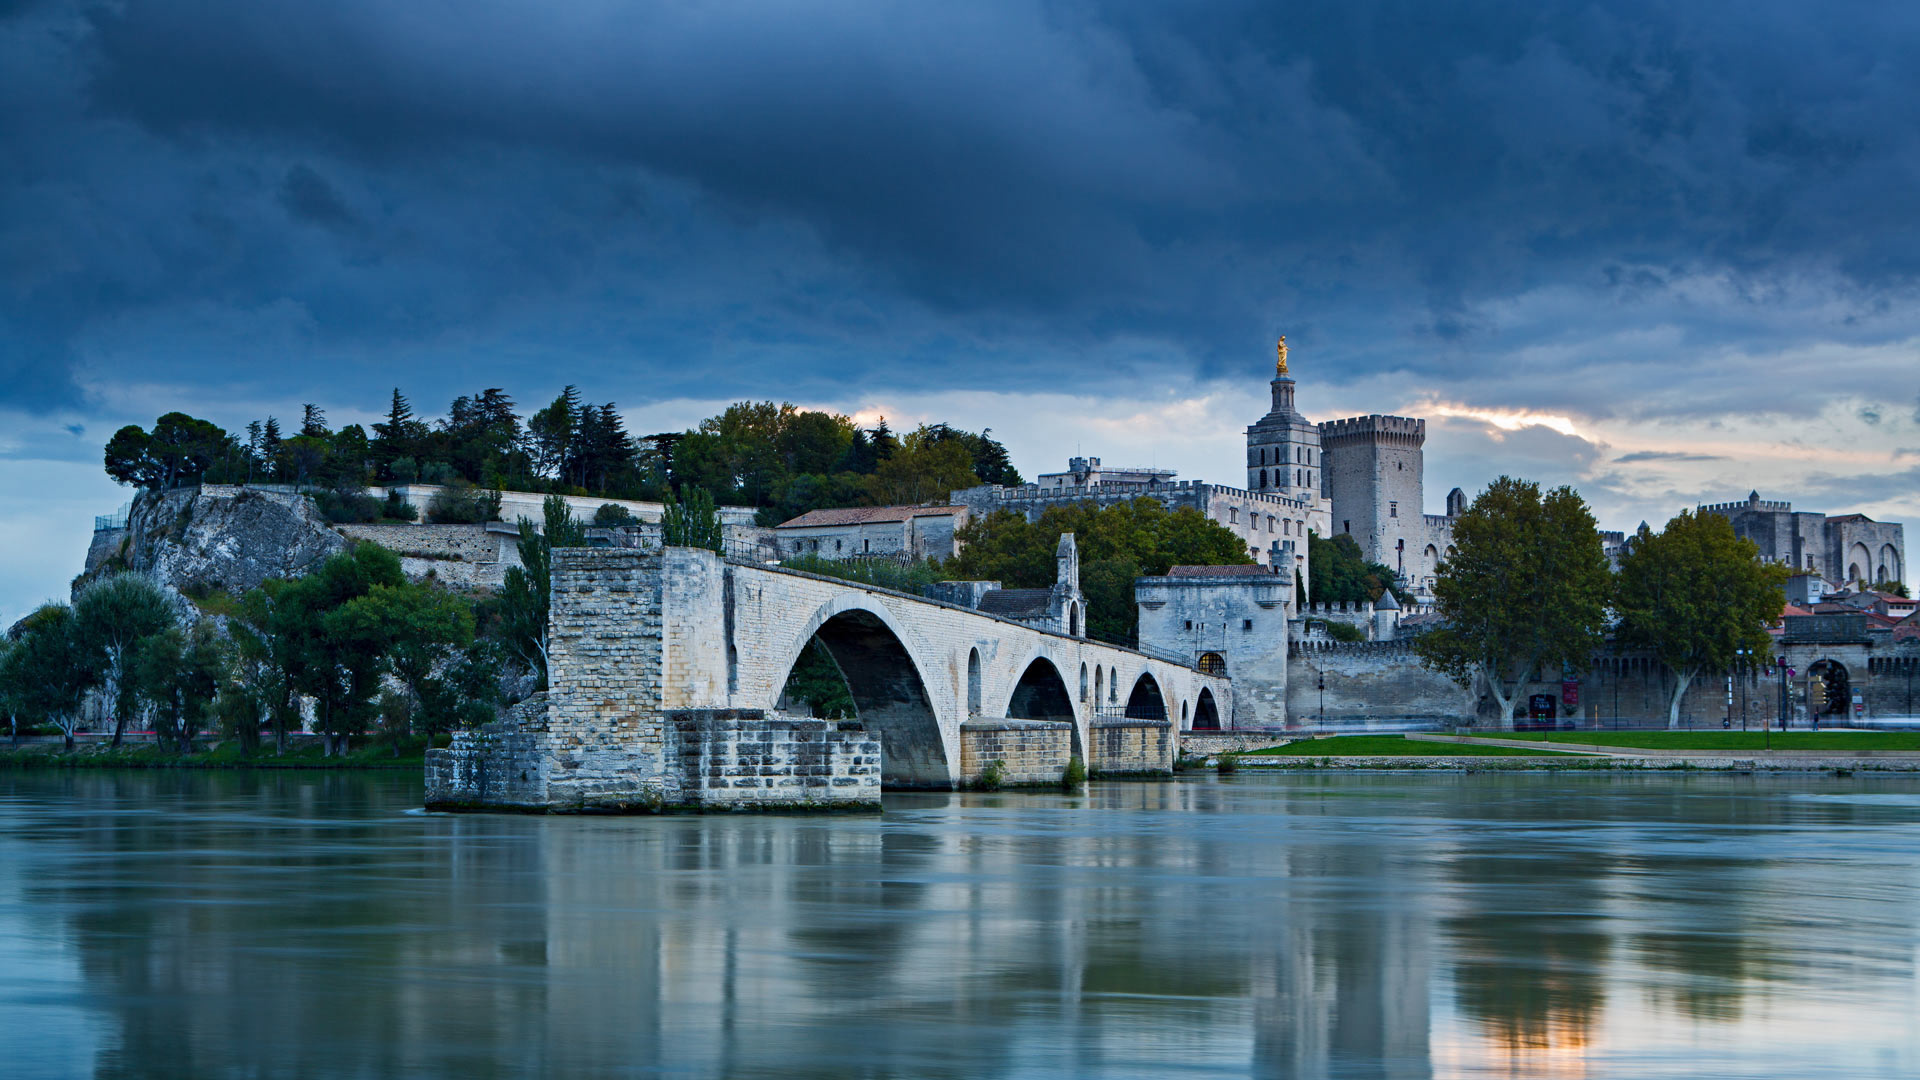 The Rhone River, Pont Saint-Benezet, Dusk in Avignon, France, 1920x1080 Full HD Desktop